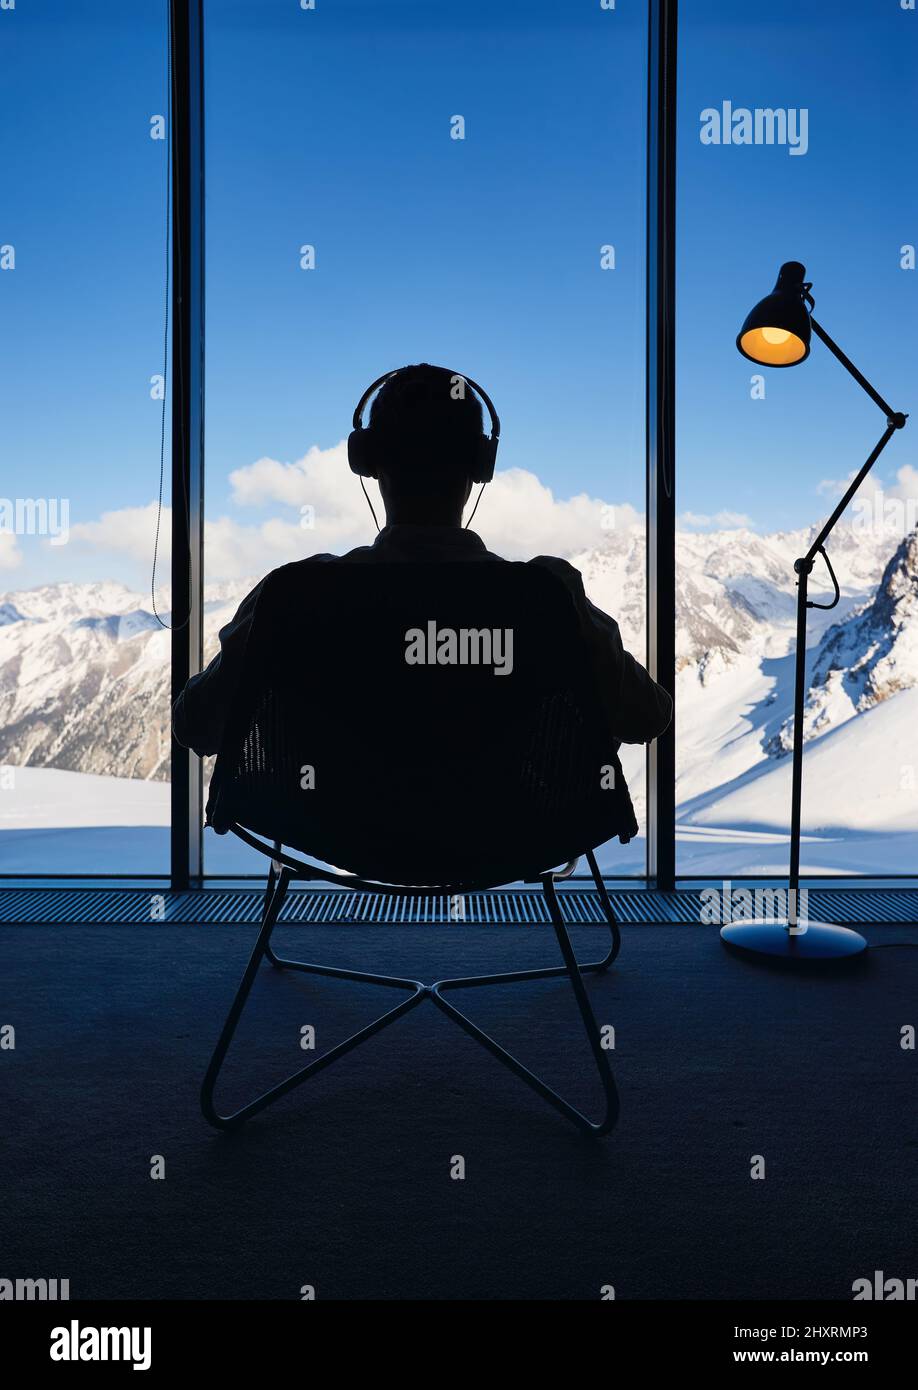 Der Mann in der Silhouette sitzt auf dem Stuhl und hört am Kopfhörer Musik in der Nähe des Panoramafensters mit friedlicher Aussicht auf eine wunderschöne verschneite Berglandschaft. Loft I Stockfoto